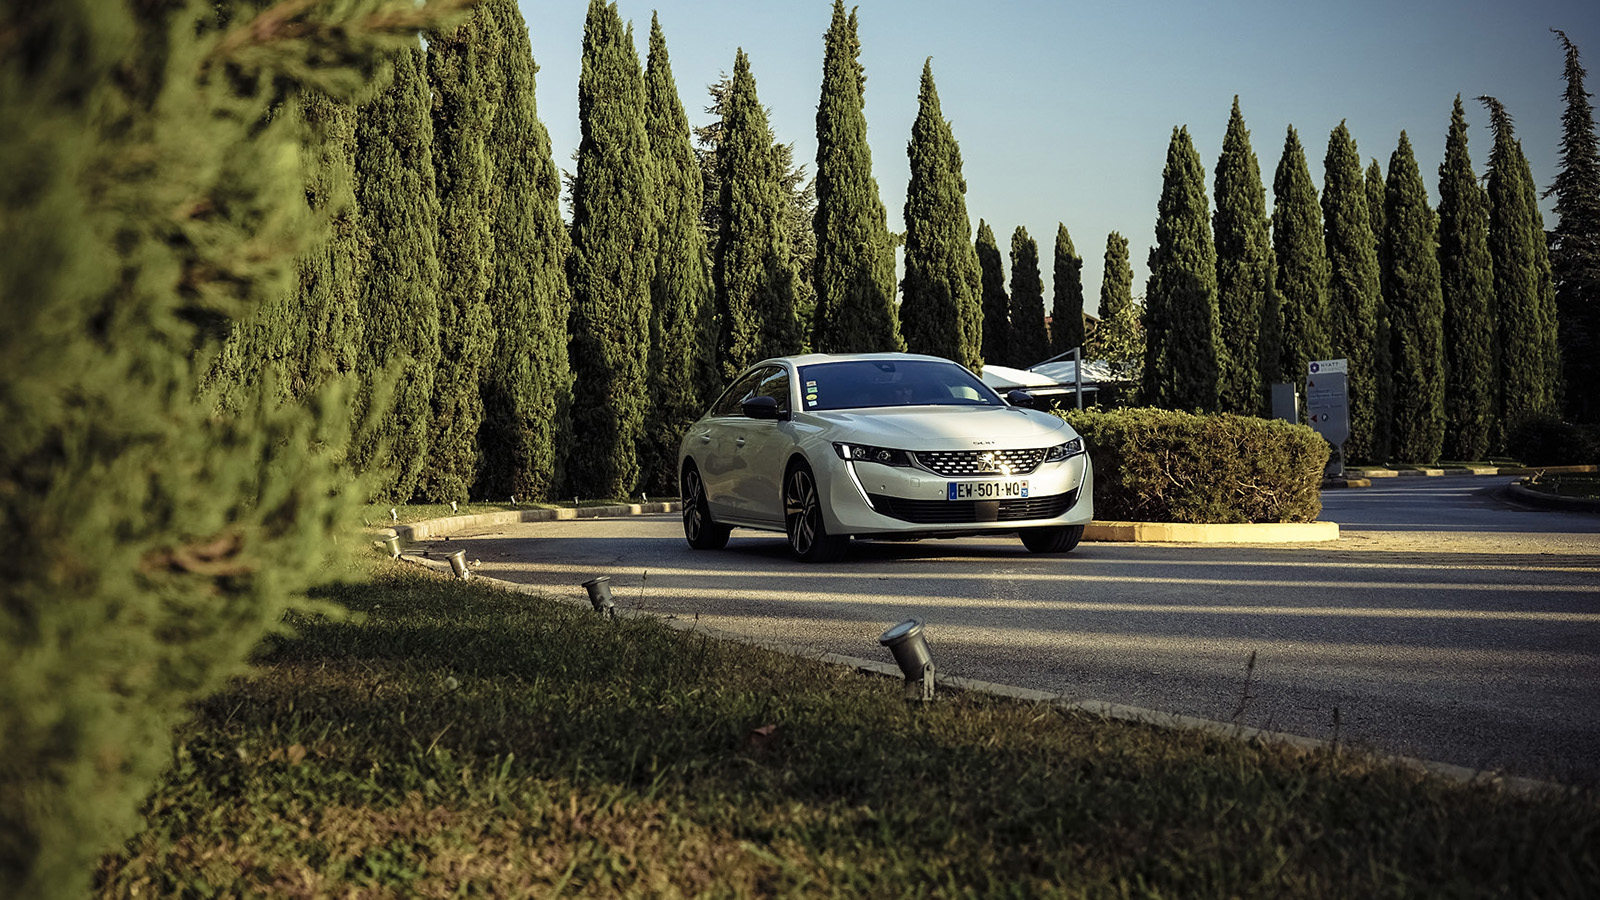 Peugeot създаде един от най-красиви си автомобили, за да преобърне представите за стереотипния сегмент D. 508 буквално крещи в лицето на всички установени играчи, като се цели изключително високо: BMW.